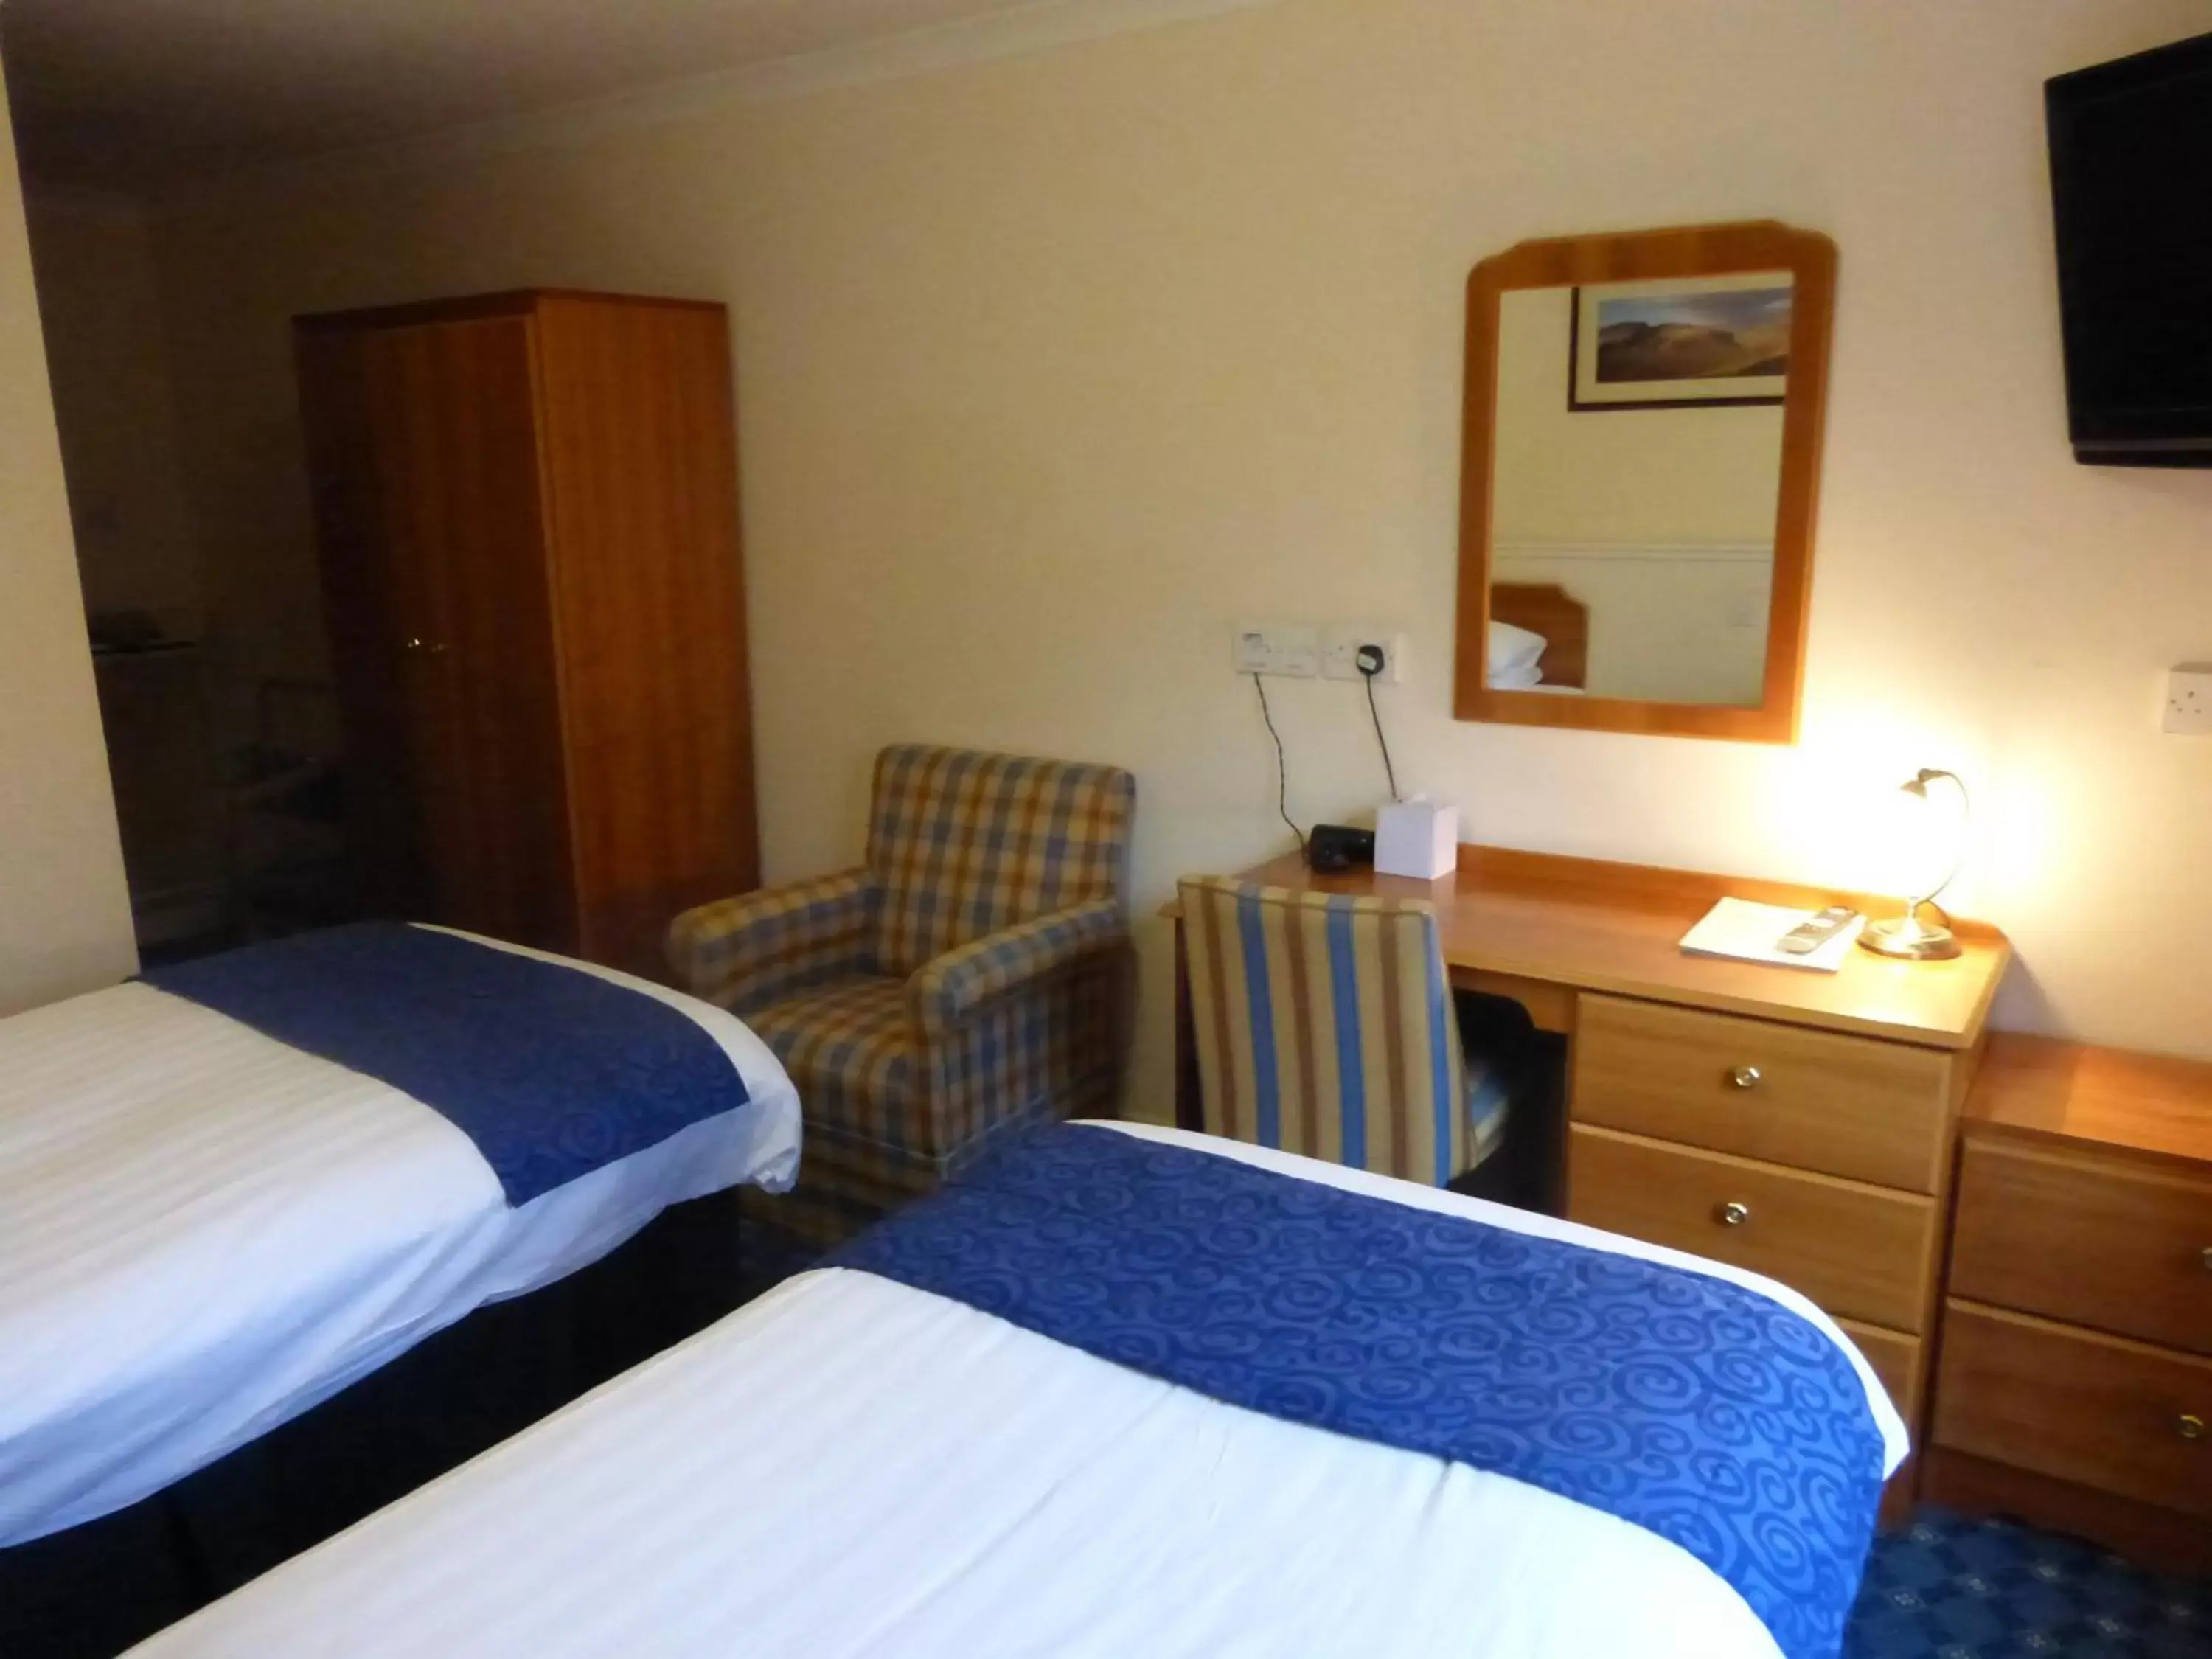 Bedroom, Bed in Norseman Hotel